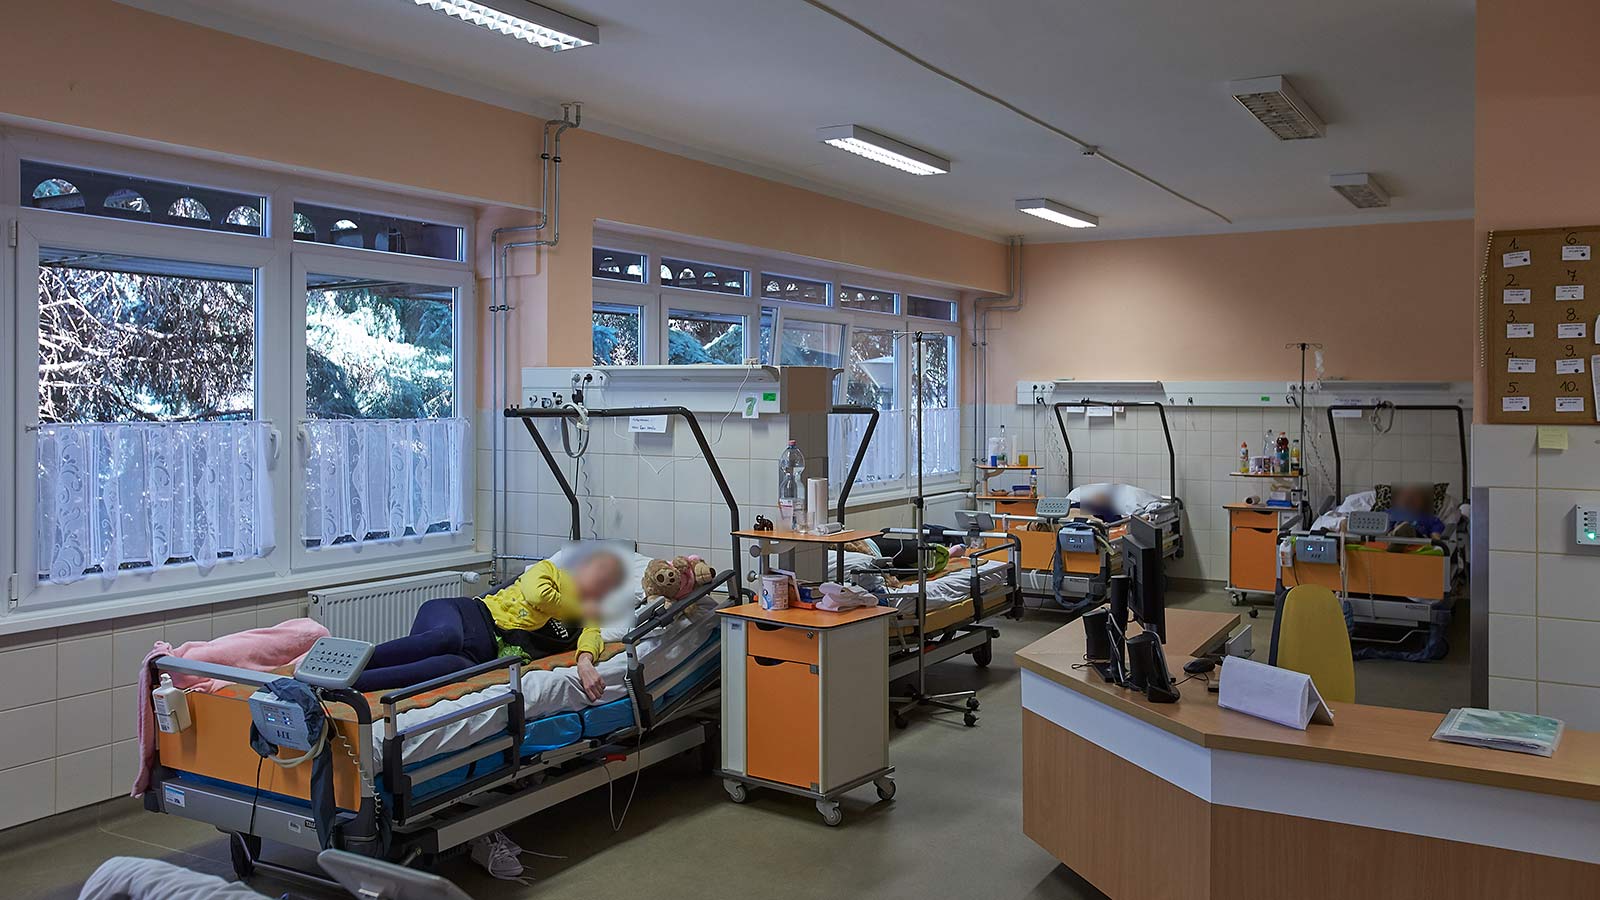 Nagy alapterületű betegszoba megfigyelőpulttal, sok ággyal